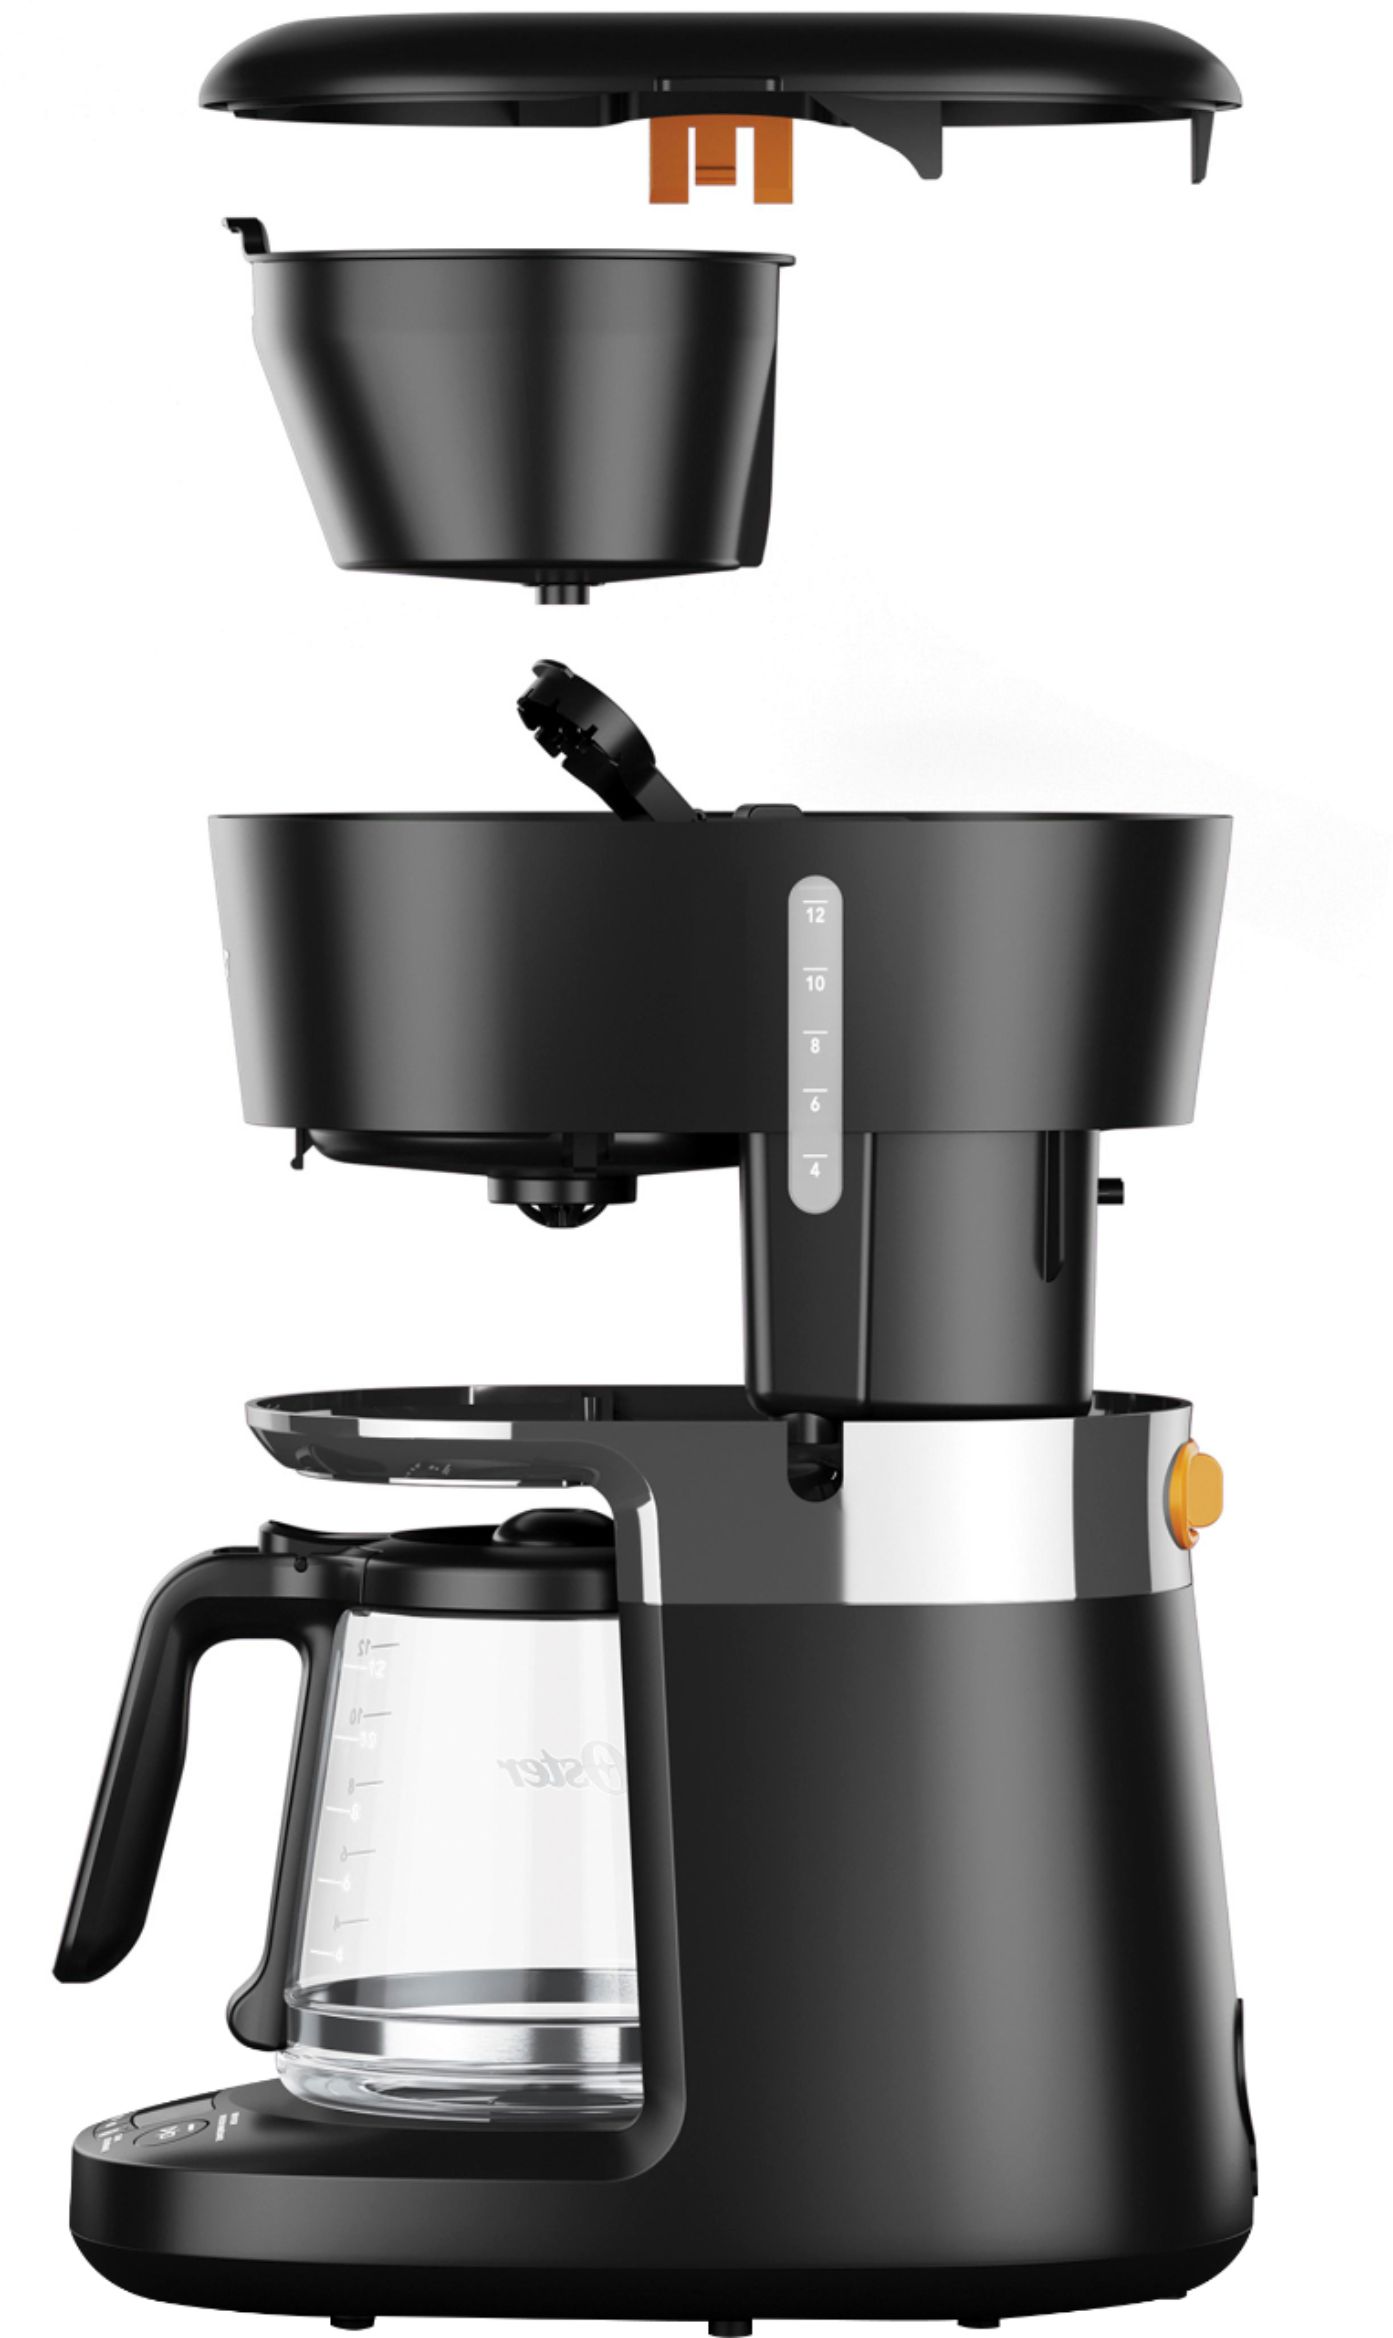 Mr. Coffee 12-Cup Coffee Maker FTX41 Black FTX41 - Best Buy